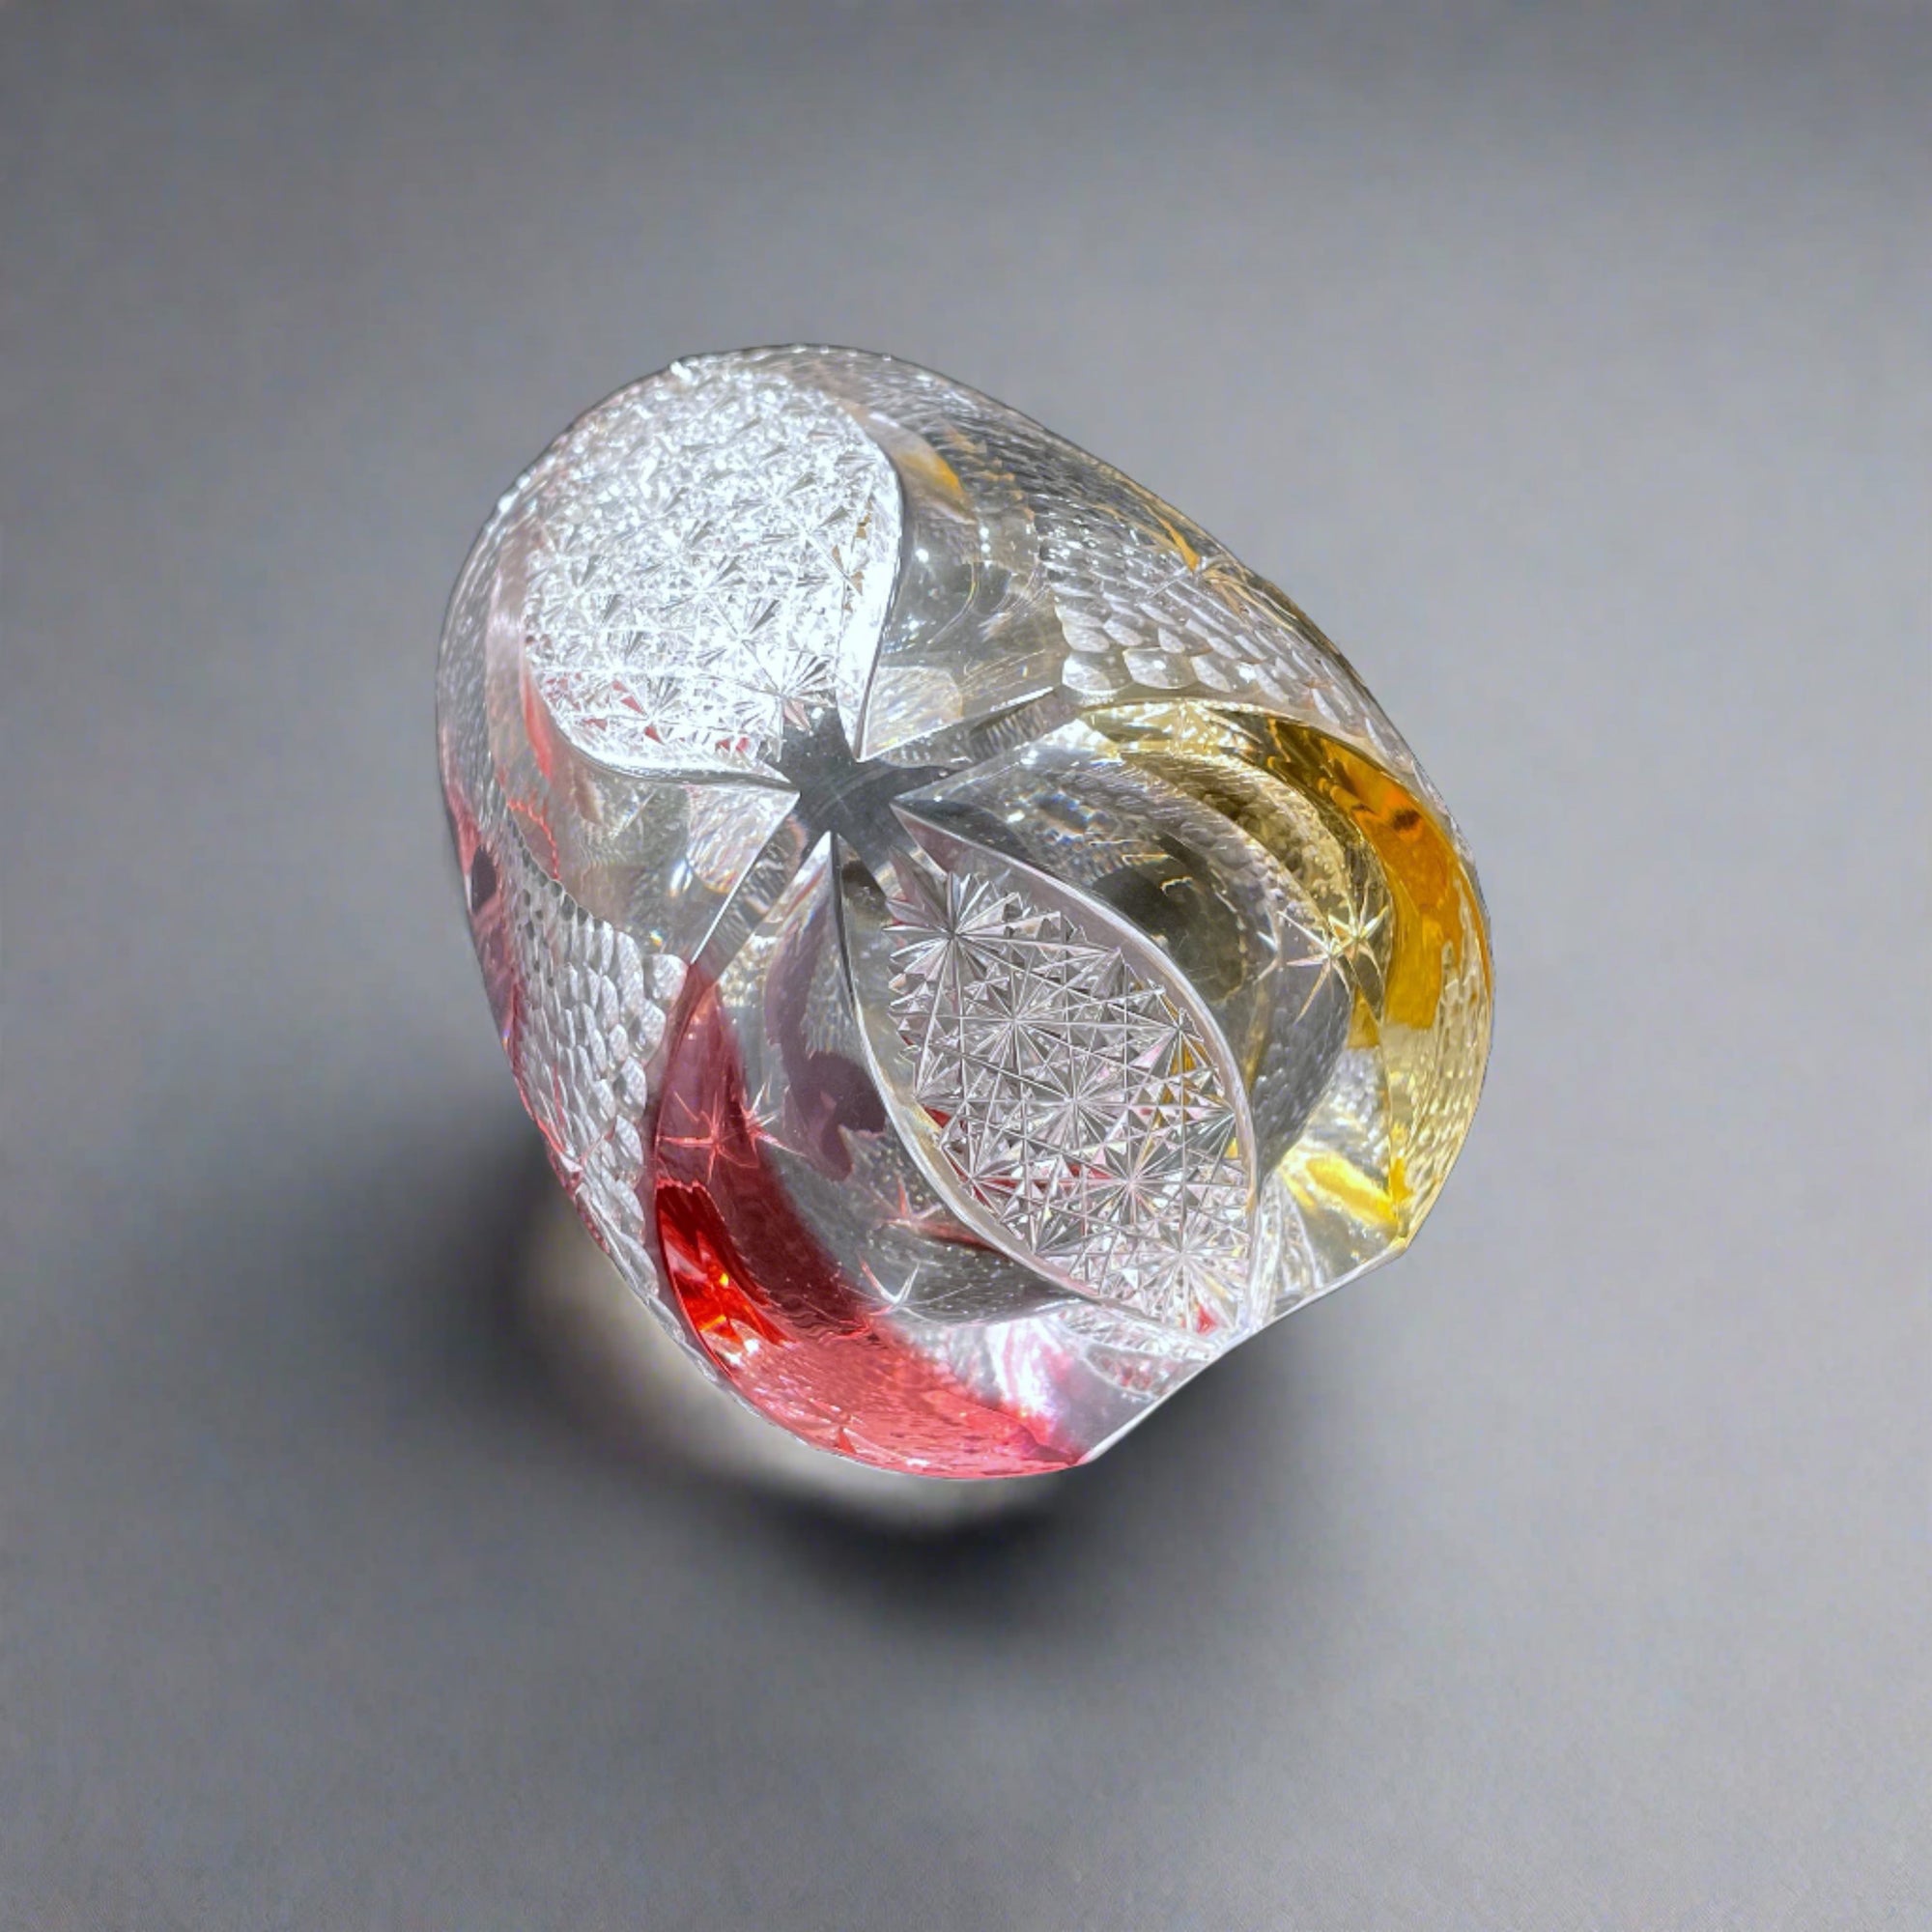 Edo Kiriko Whisky Glass by Junichi Nabetani - Butterfly Pink &amp; Yellow